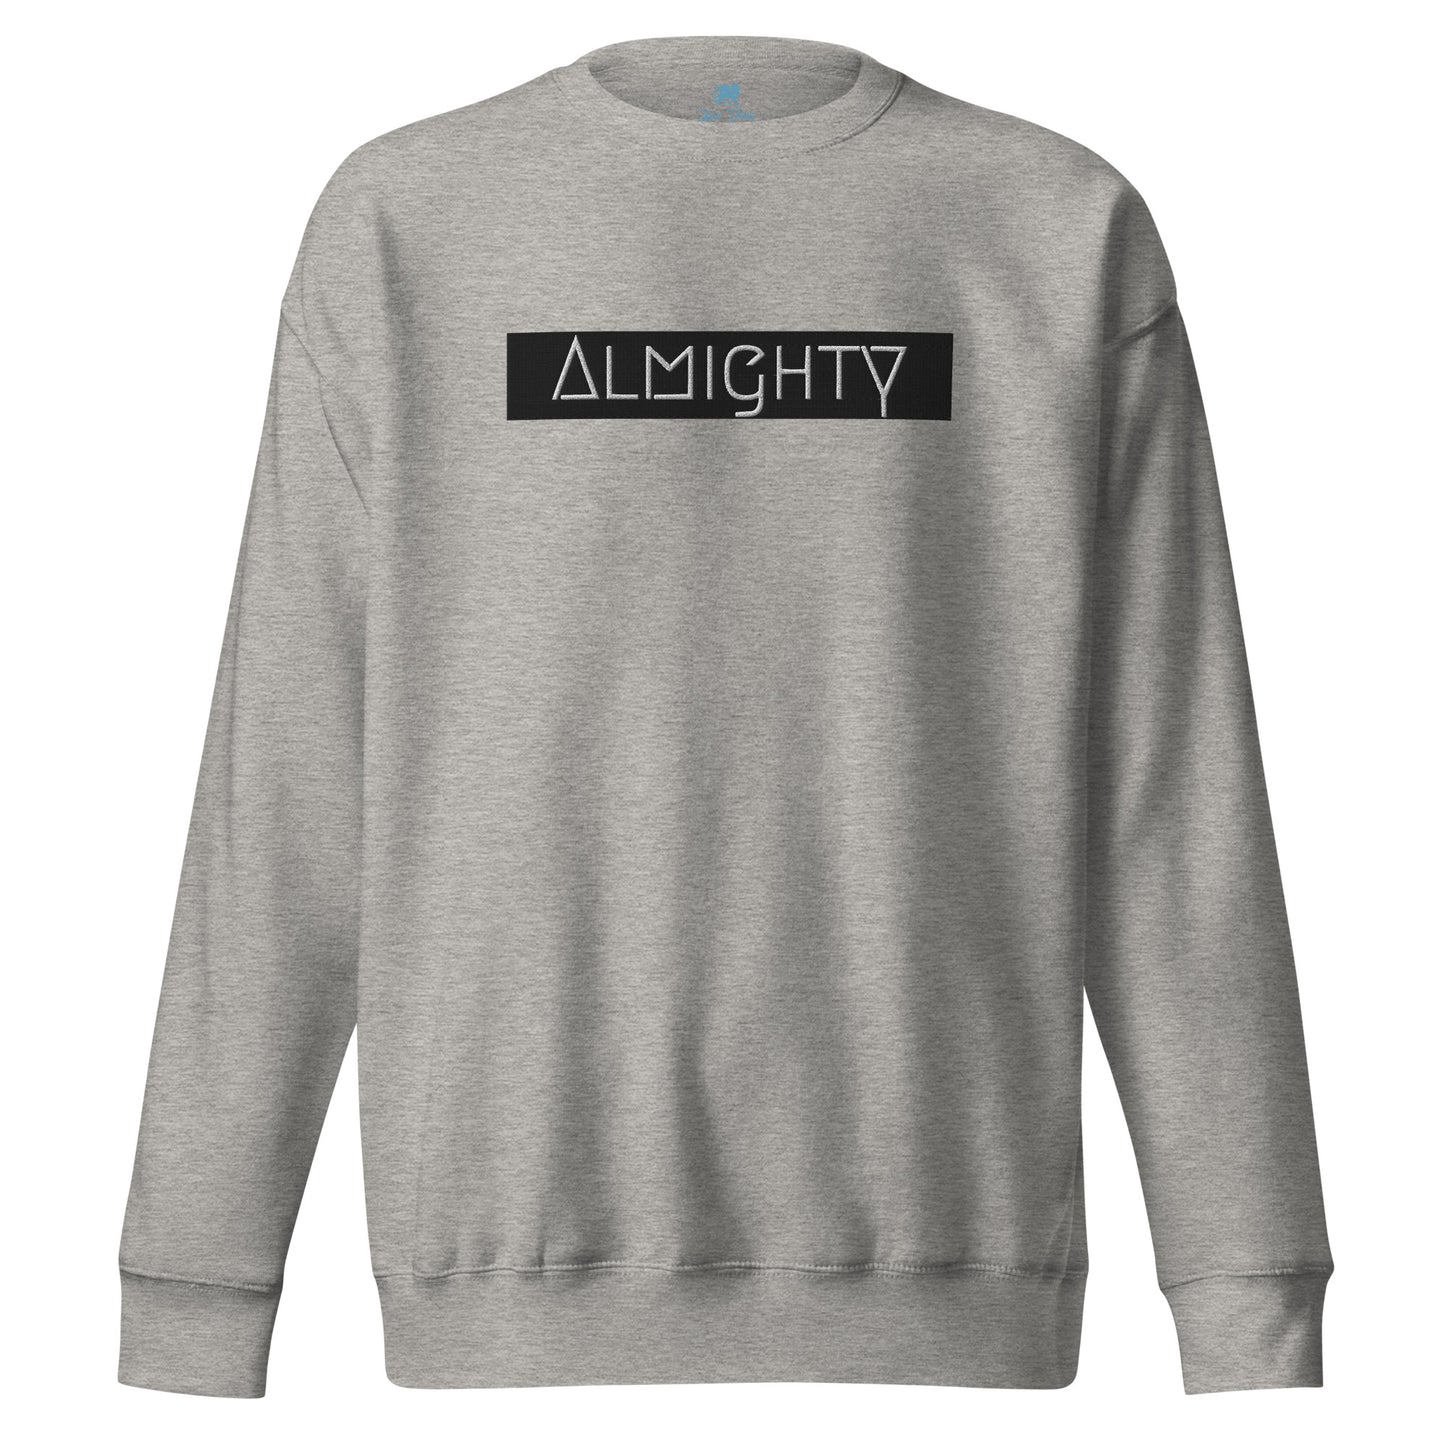 Premium Sweatshirt - Almighty